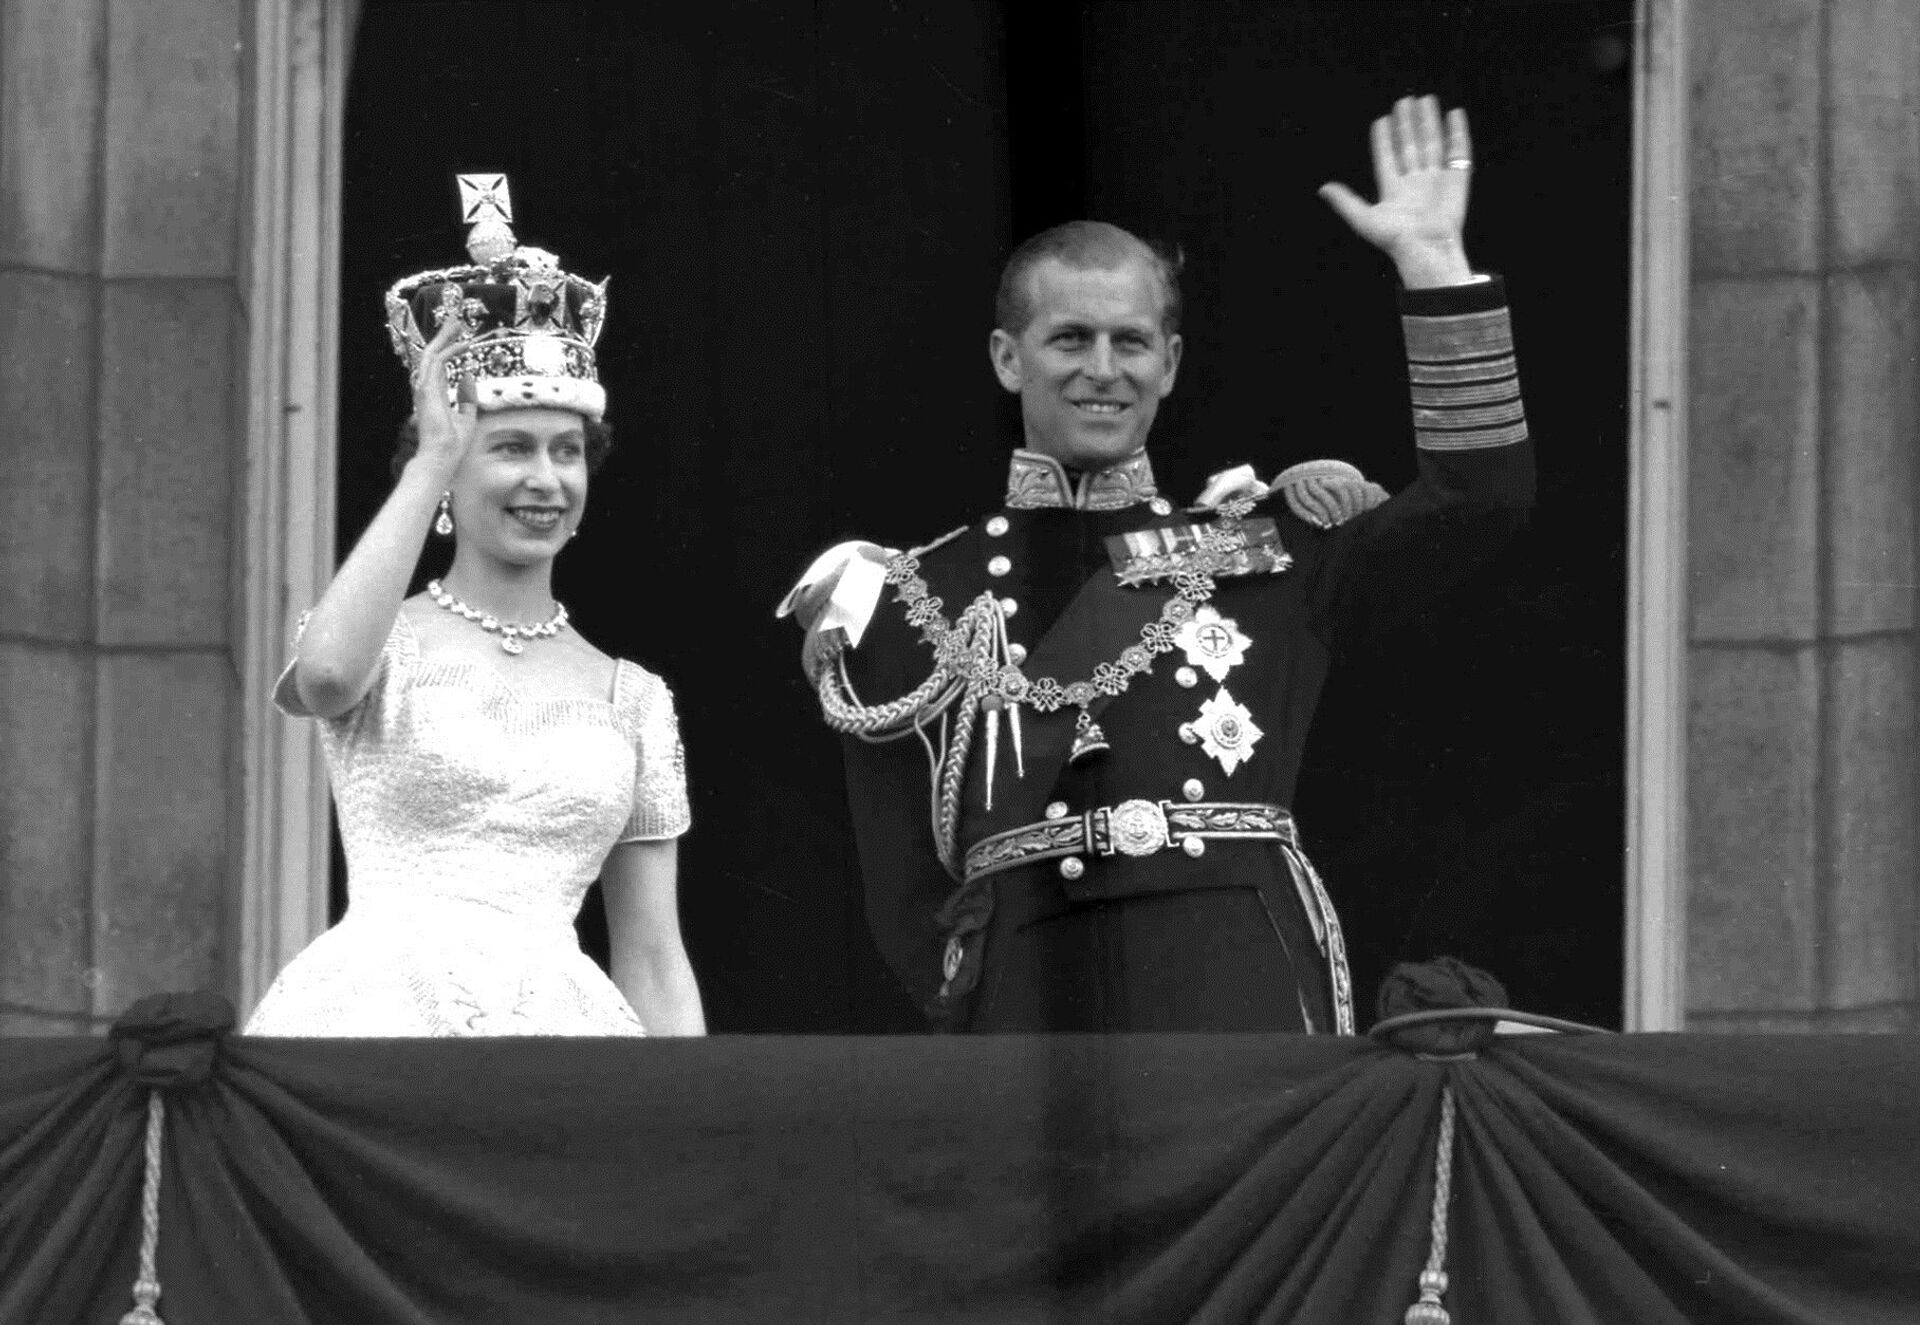 Од Крфа до Бакингамске палате: Животни пут принца Филипа био је пун обрта /фото/ - Sputnik Србија, 1920, 09.04.2021